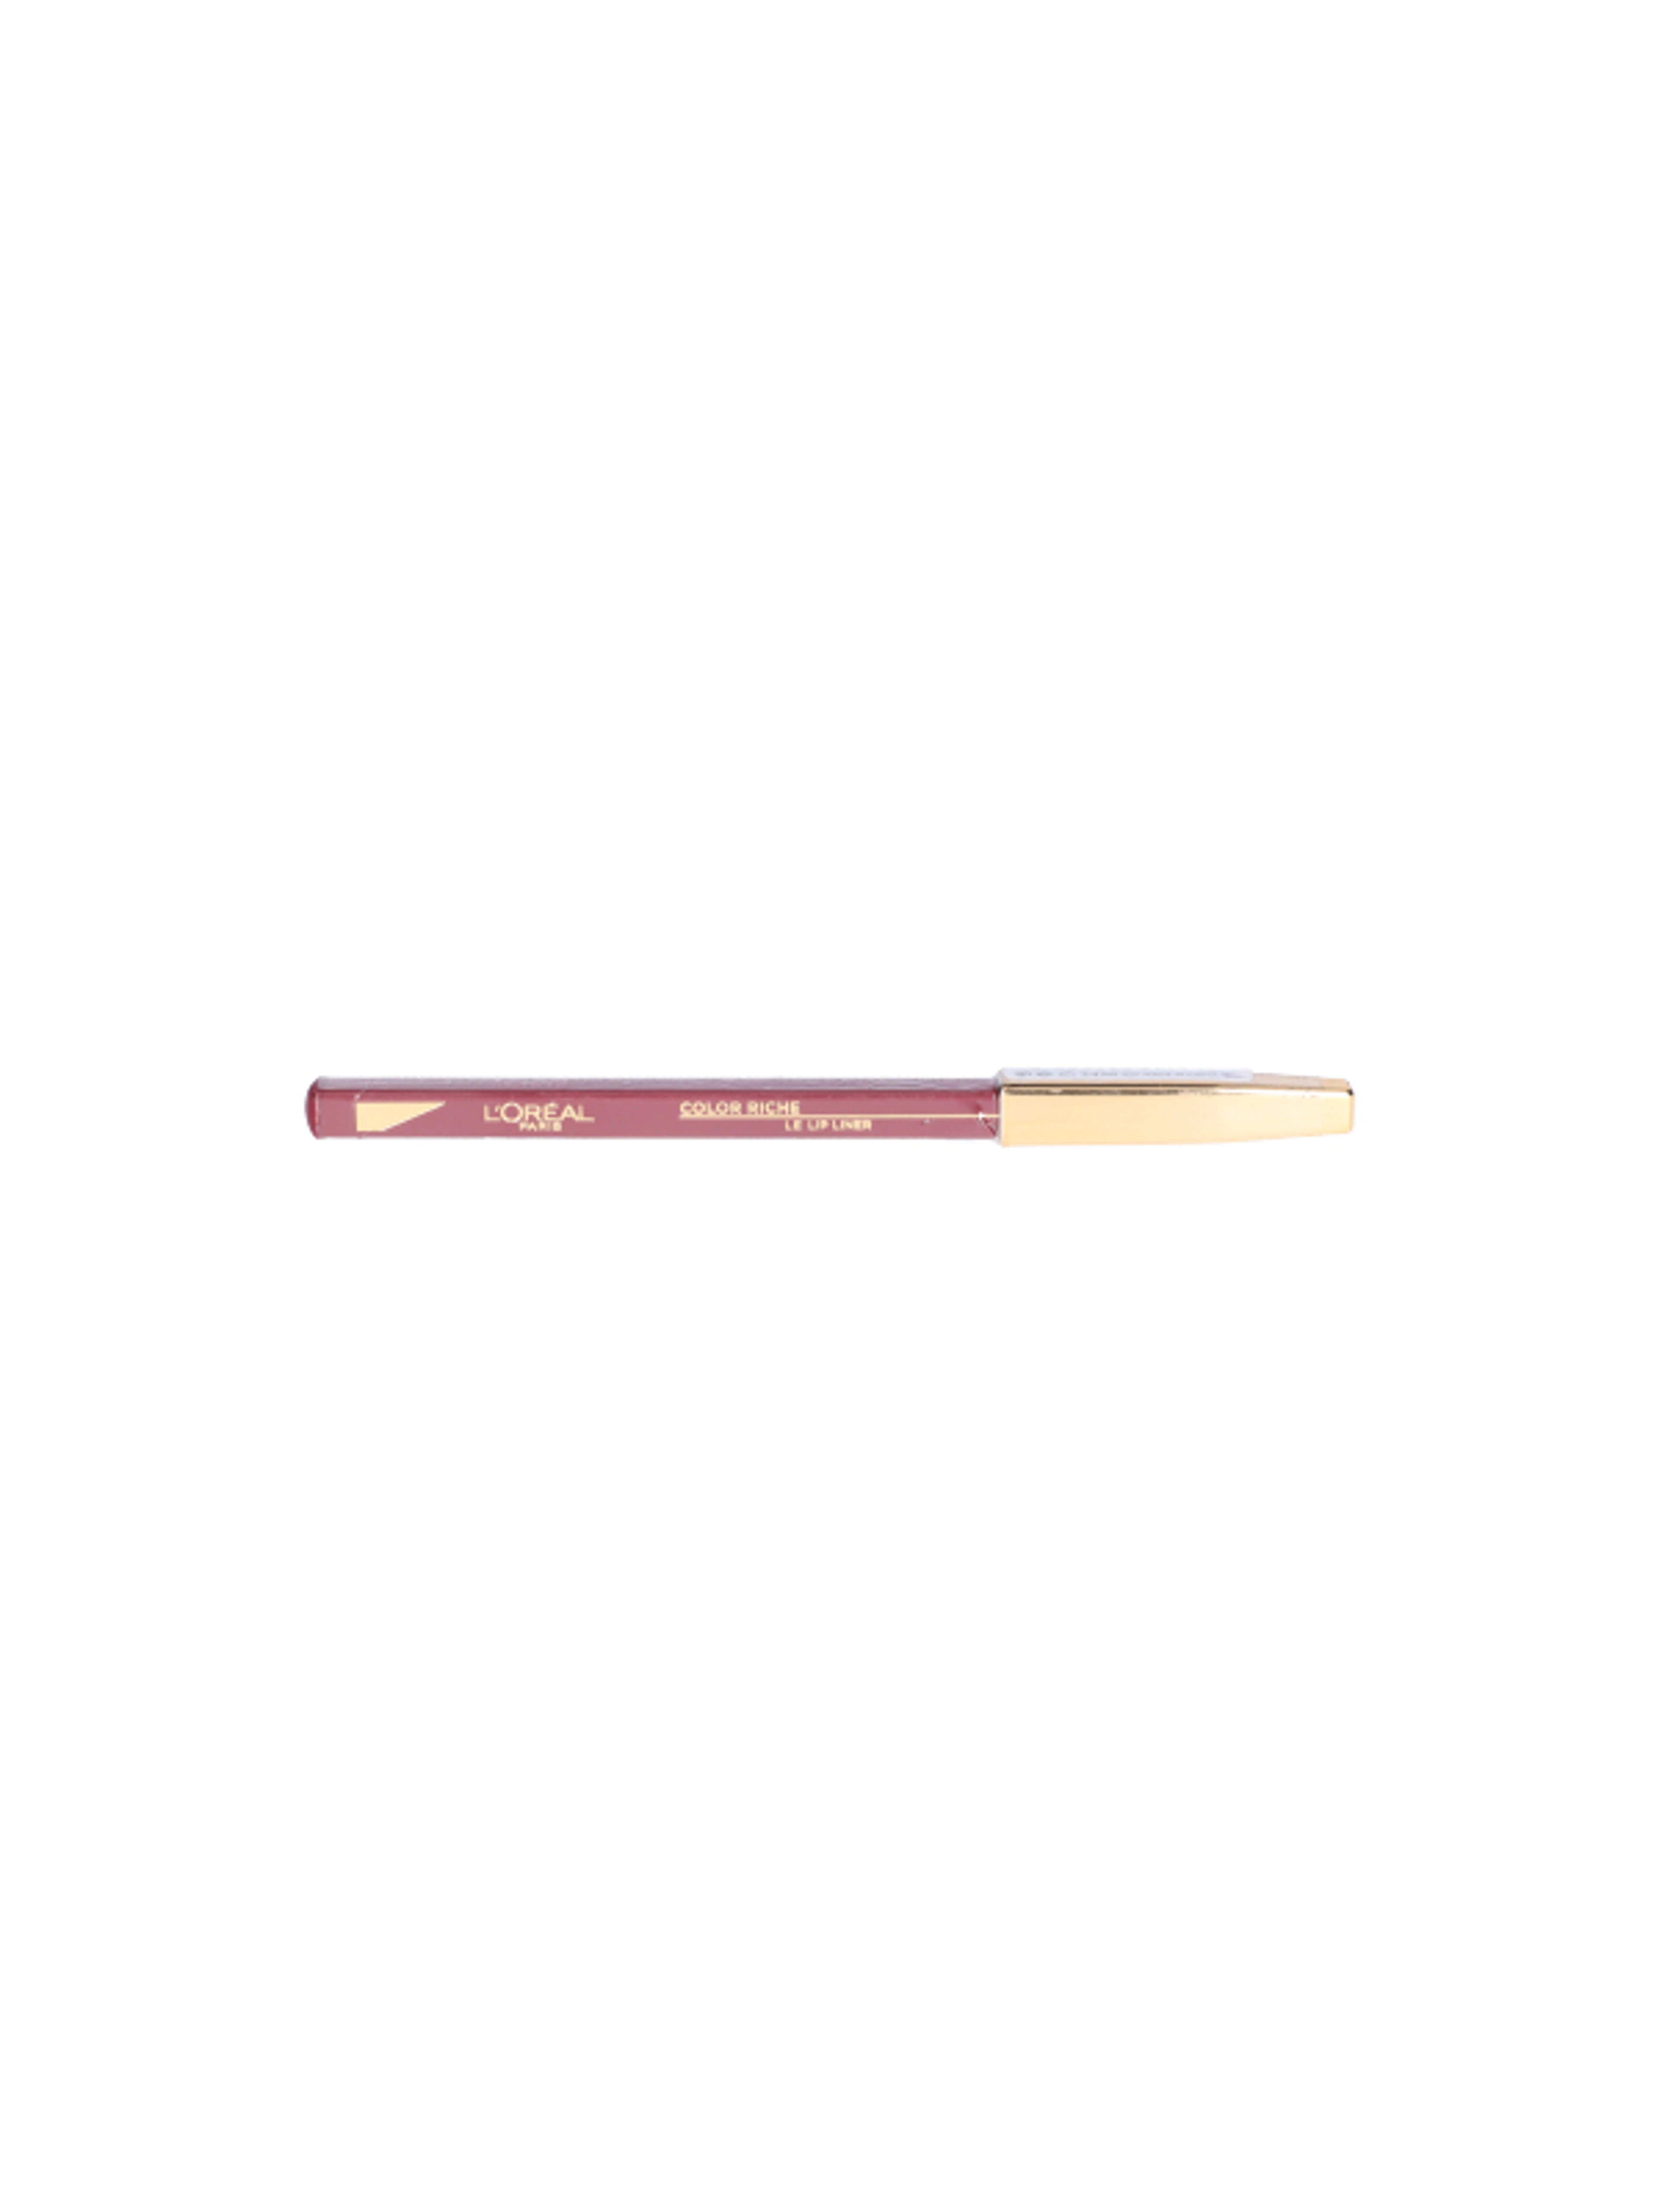 L'Oréal Paris Color Riche ajakkontúr ceruza 127 - 1 db-1